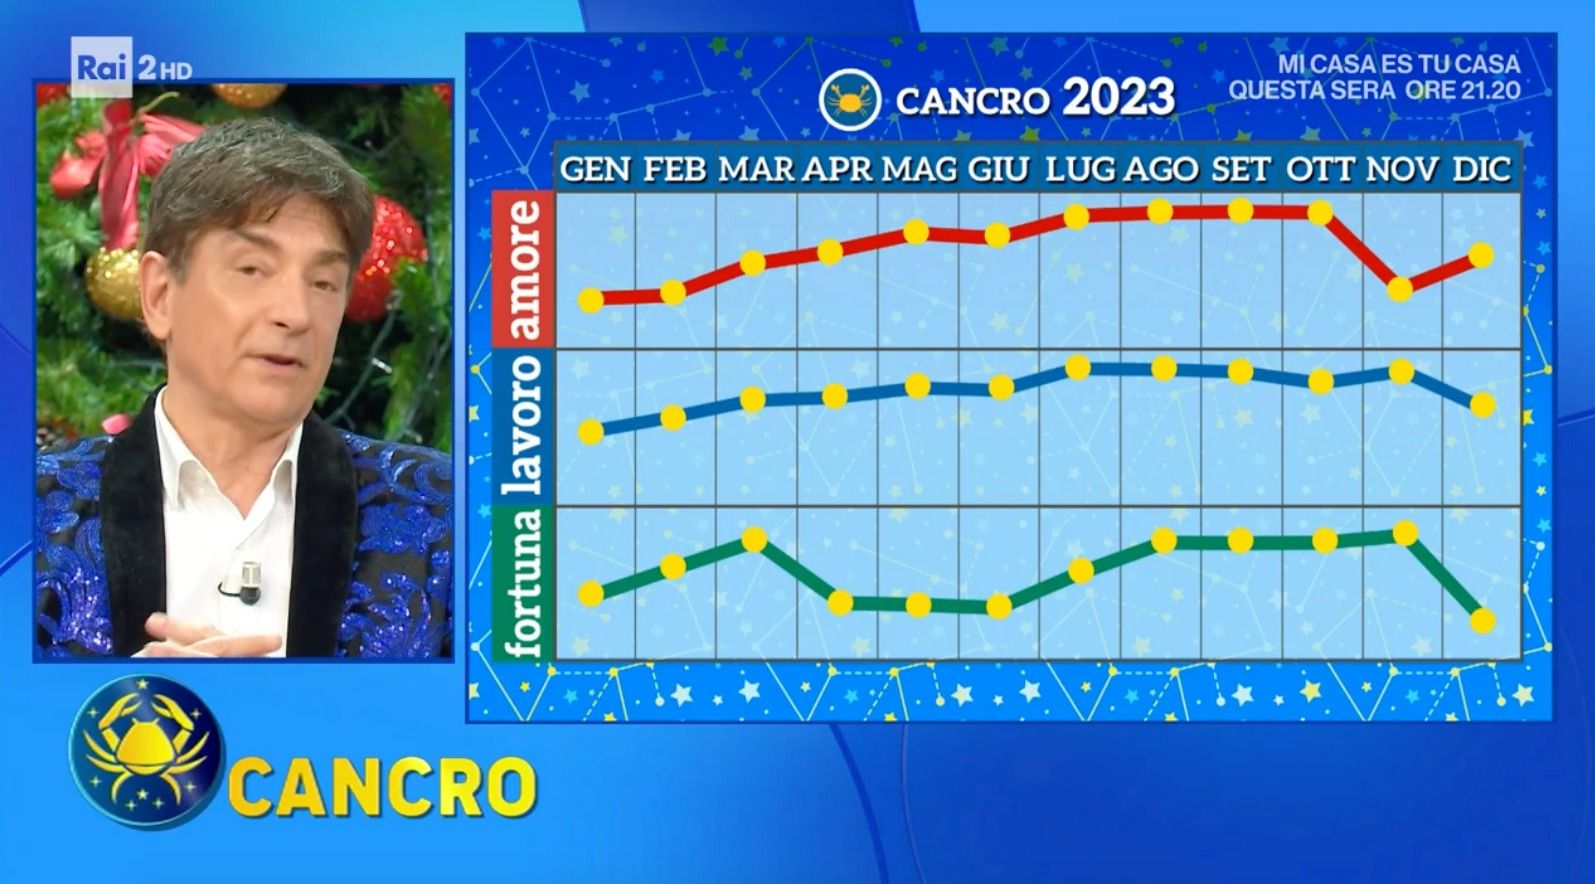 Grafico Paolo Fox oroscopo cancro 2023